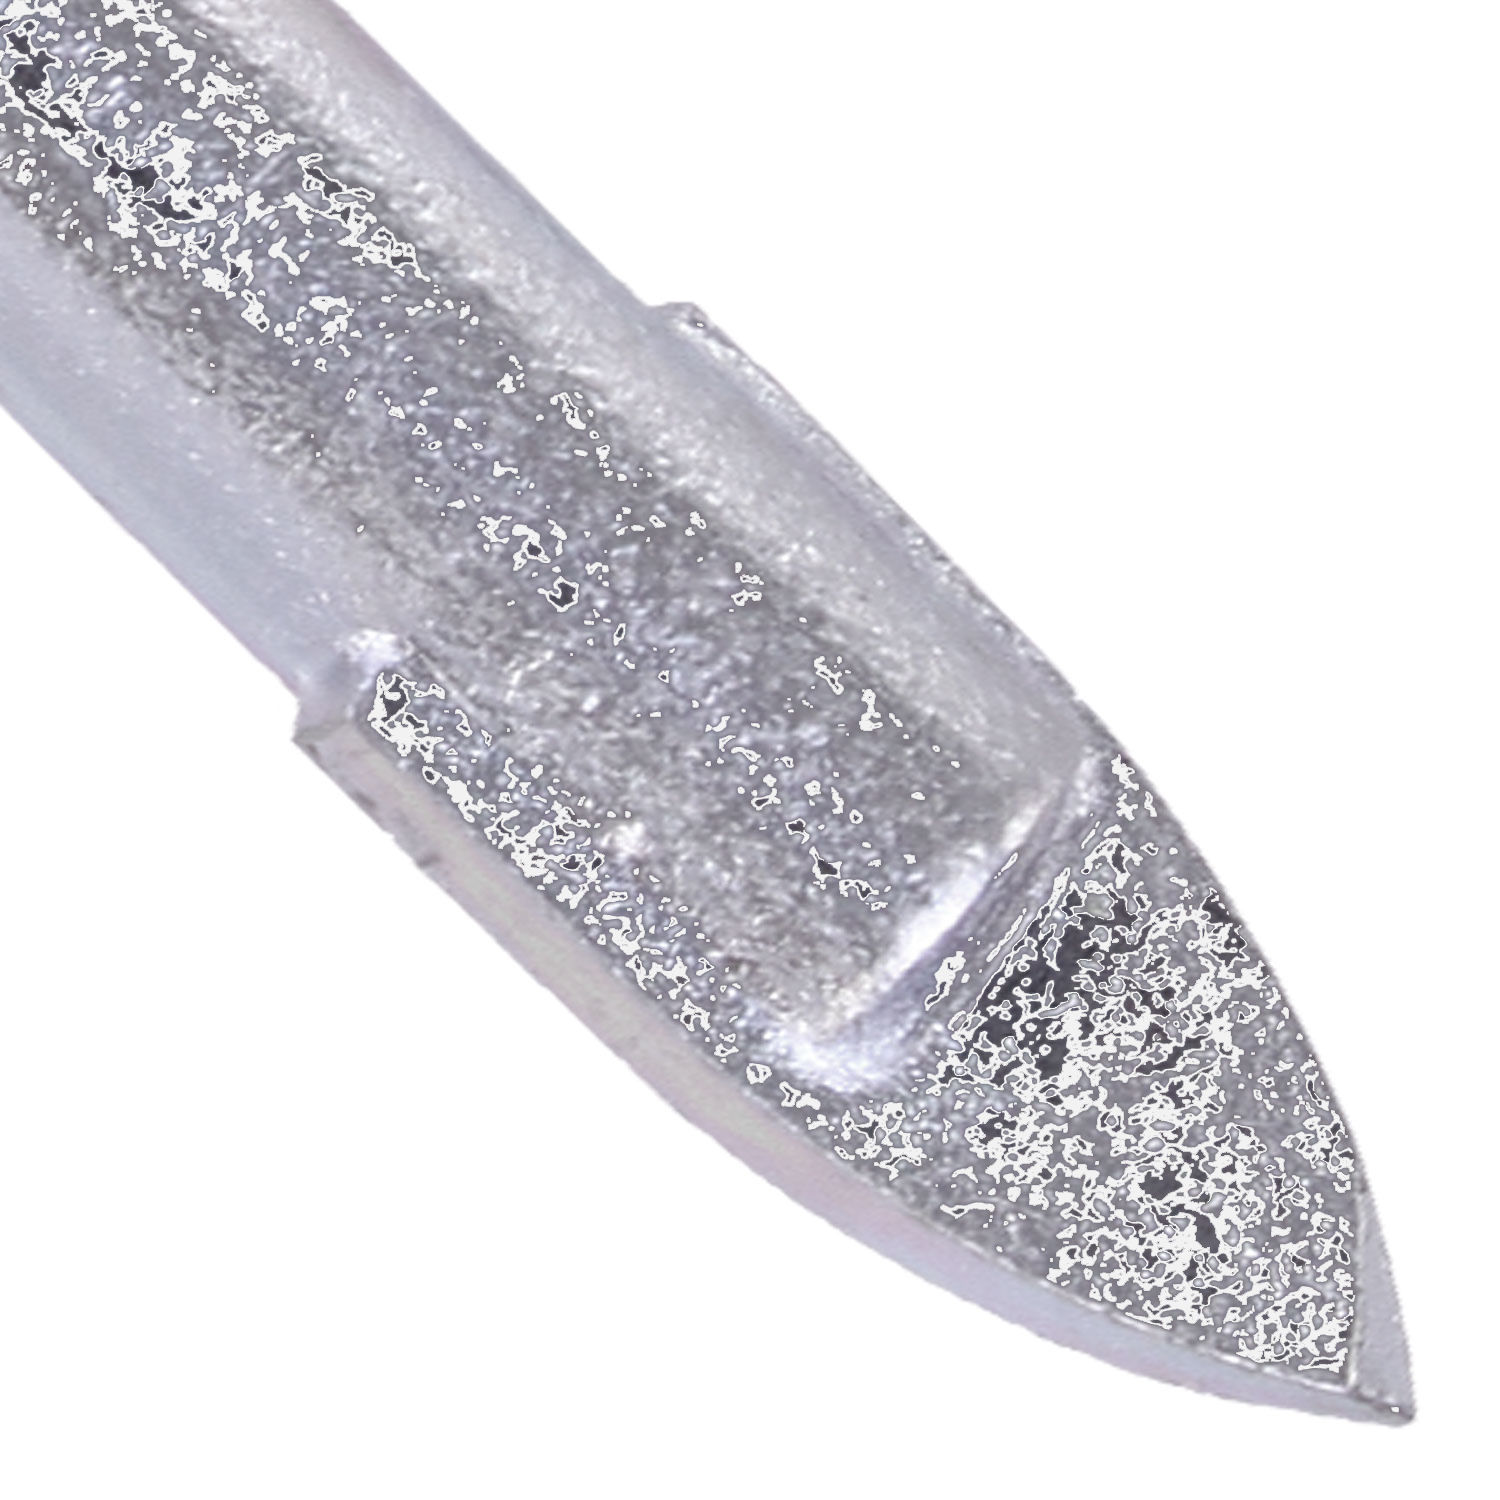 1 KEIL Glasbohrer Ø = 10mm, Länge = 98mm - diamantgeschliffene Hartmetallplatte